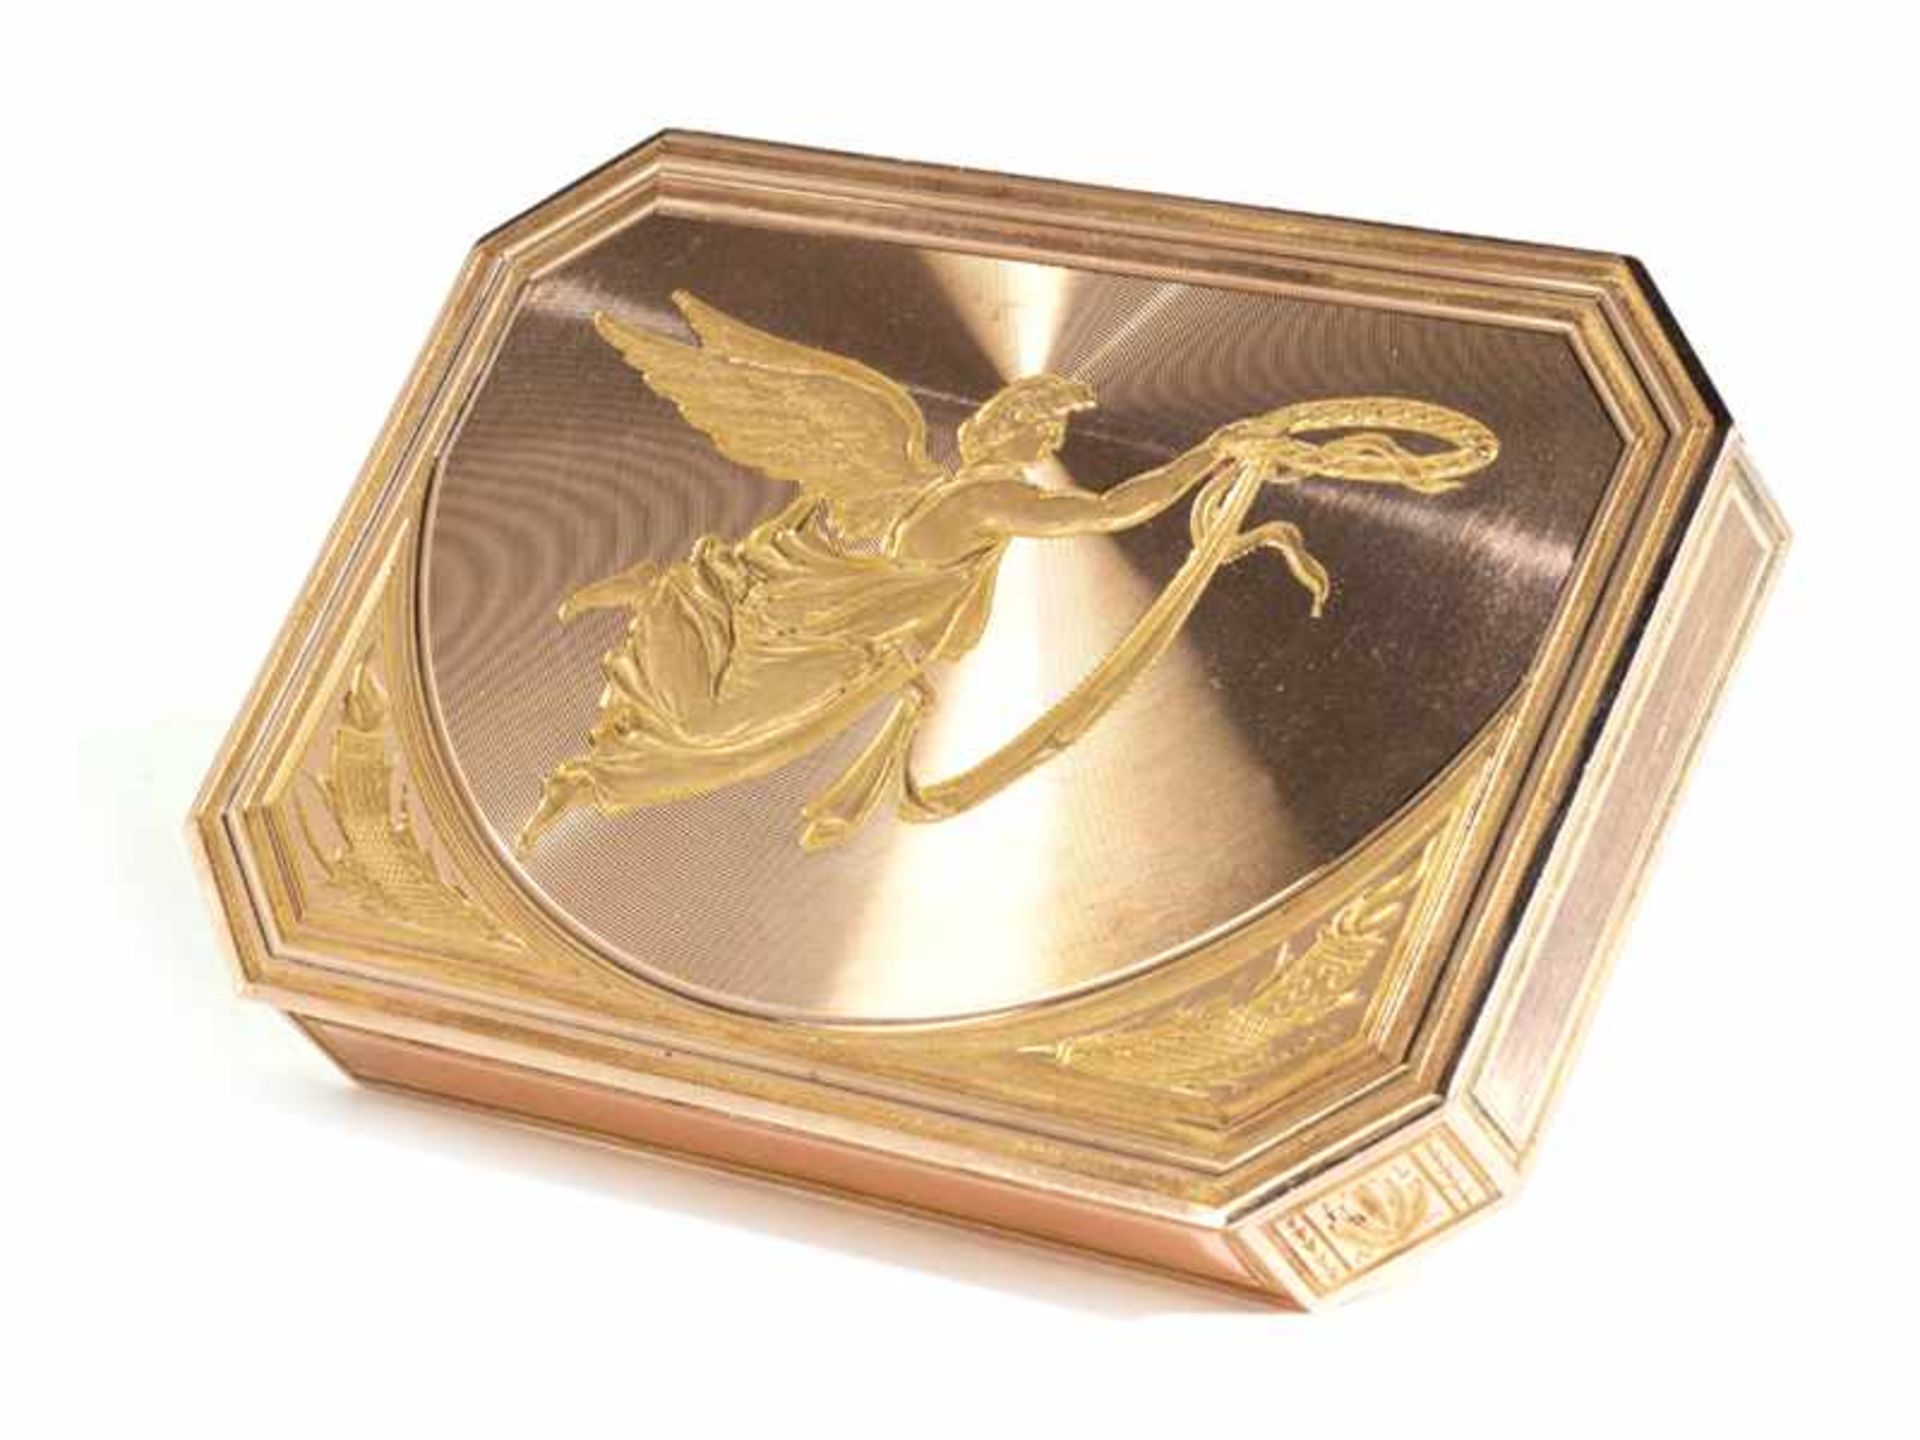 Golddose mit Genius 1,3 x 9,3 x 6,6 cm. Gewicht: 98 g. Steckkante punziert mit 583er Feingehalt